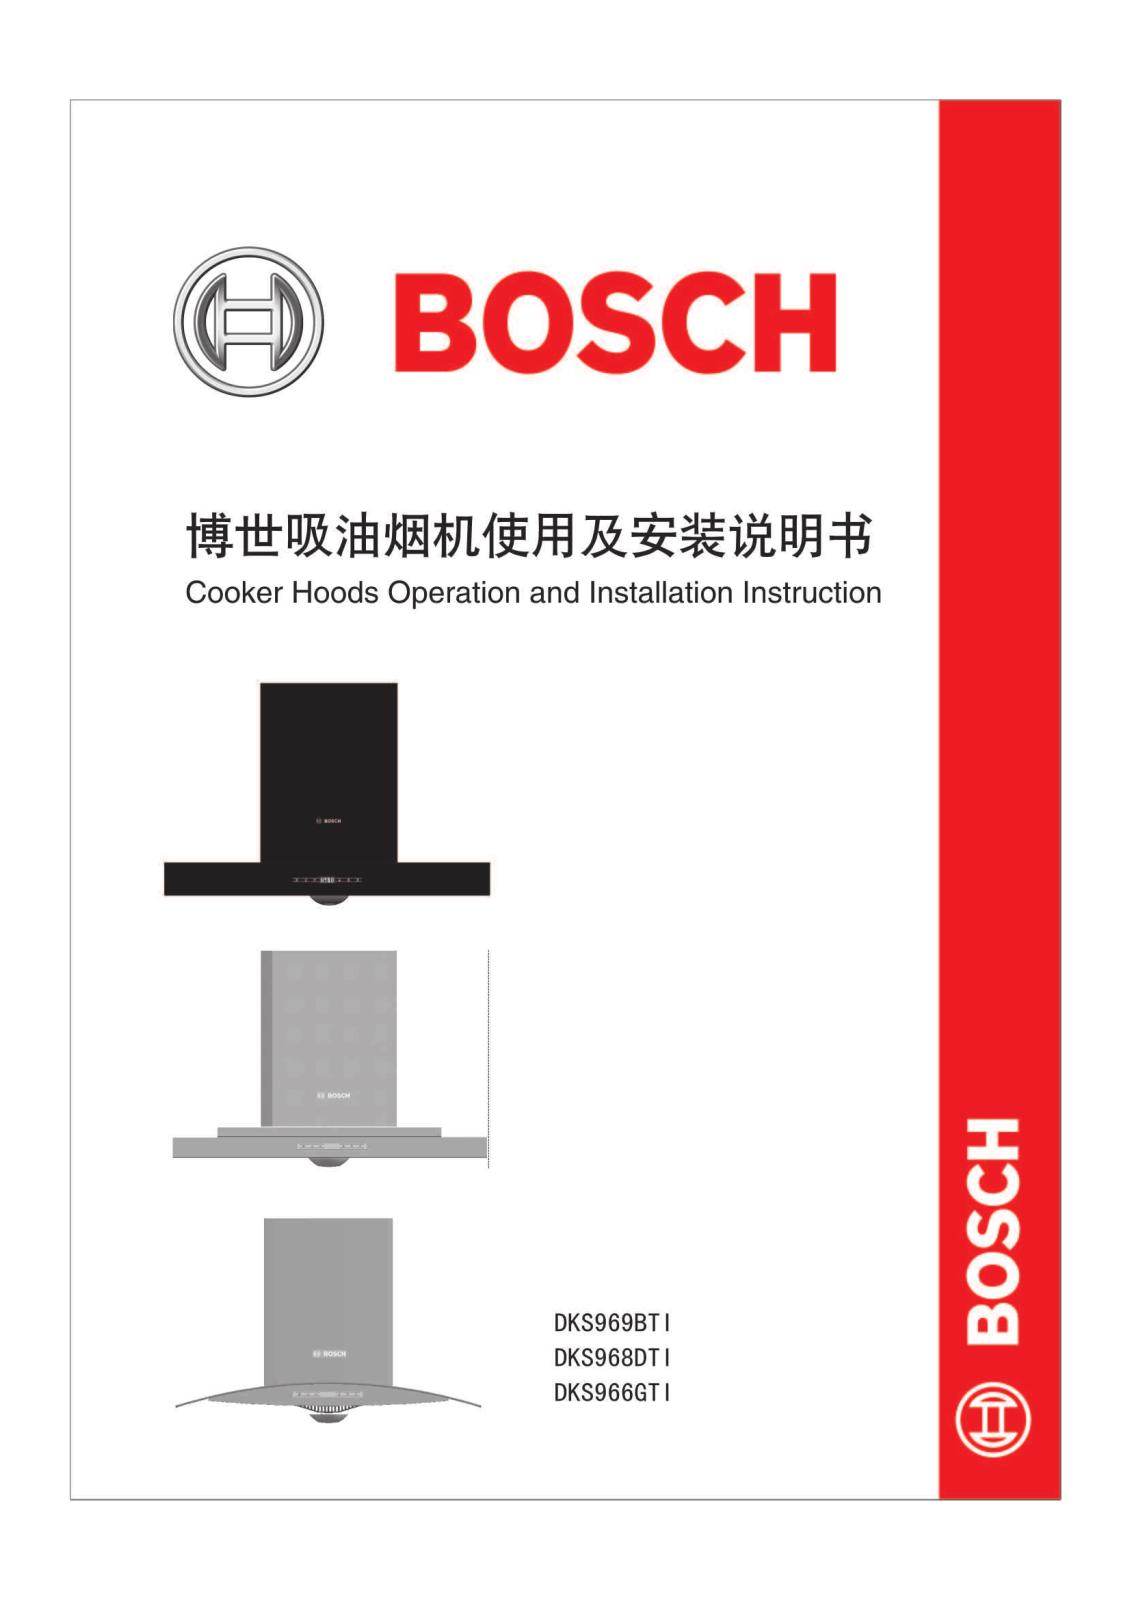 BOSCH DKS969BT1, DKS968DT1, DKS966GT1 User Manual